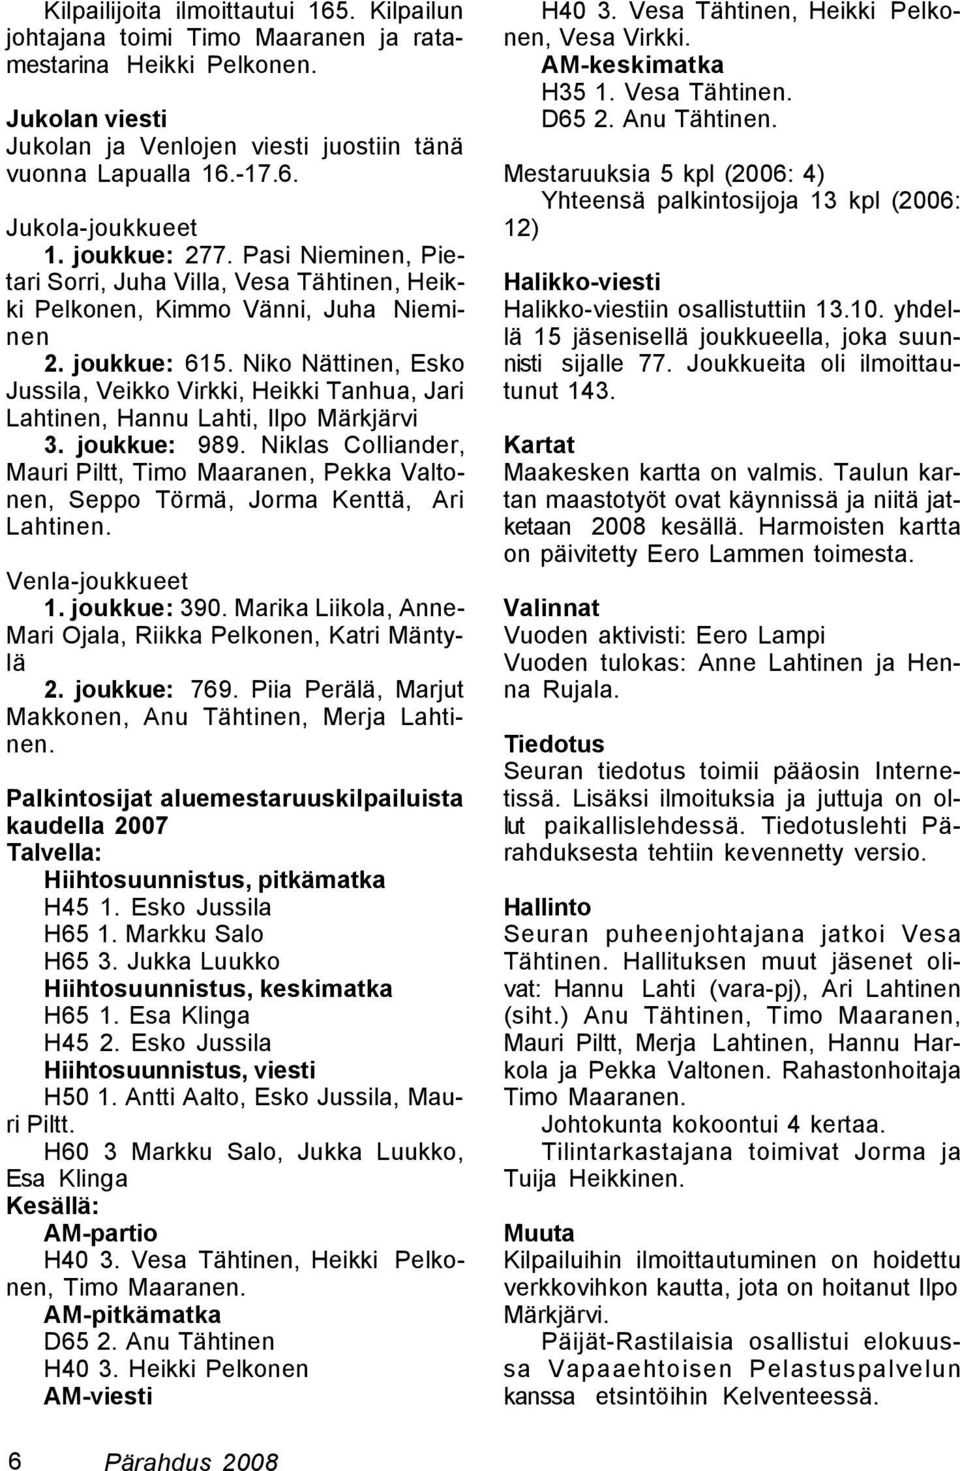 Niko Nättinen, Esko Jussila, Veikko Virkki, Heikki Tanhua, Jari Lahtinen, Hannu Lahti, Ilpo Märkjärvi 3. joukkue: 989.